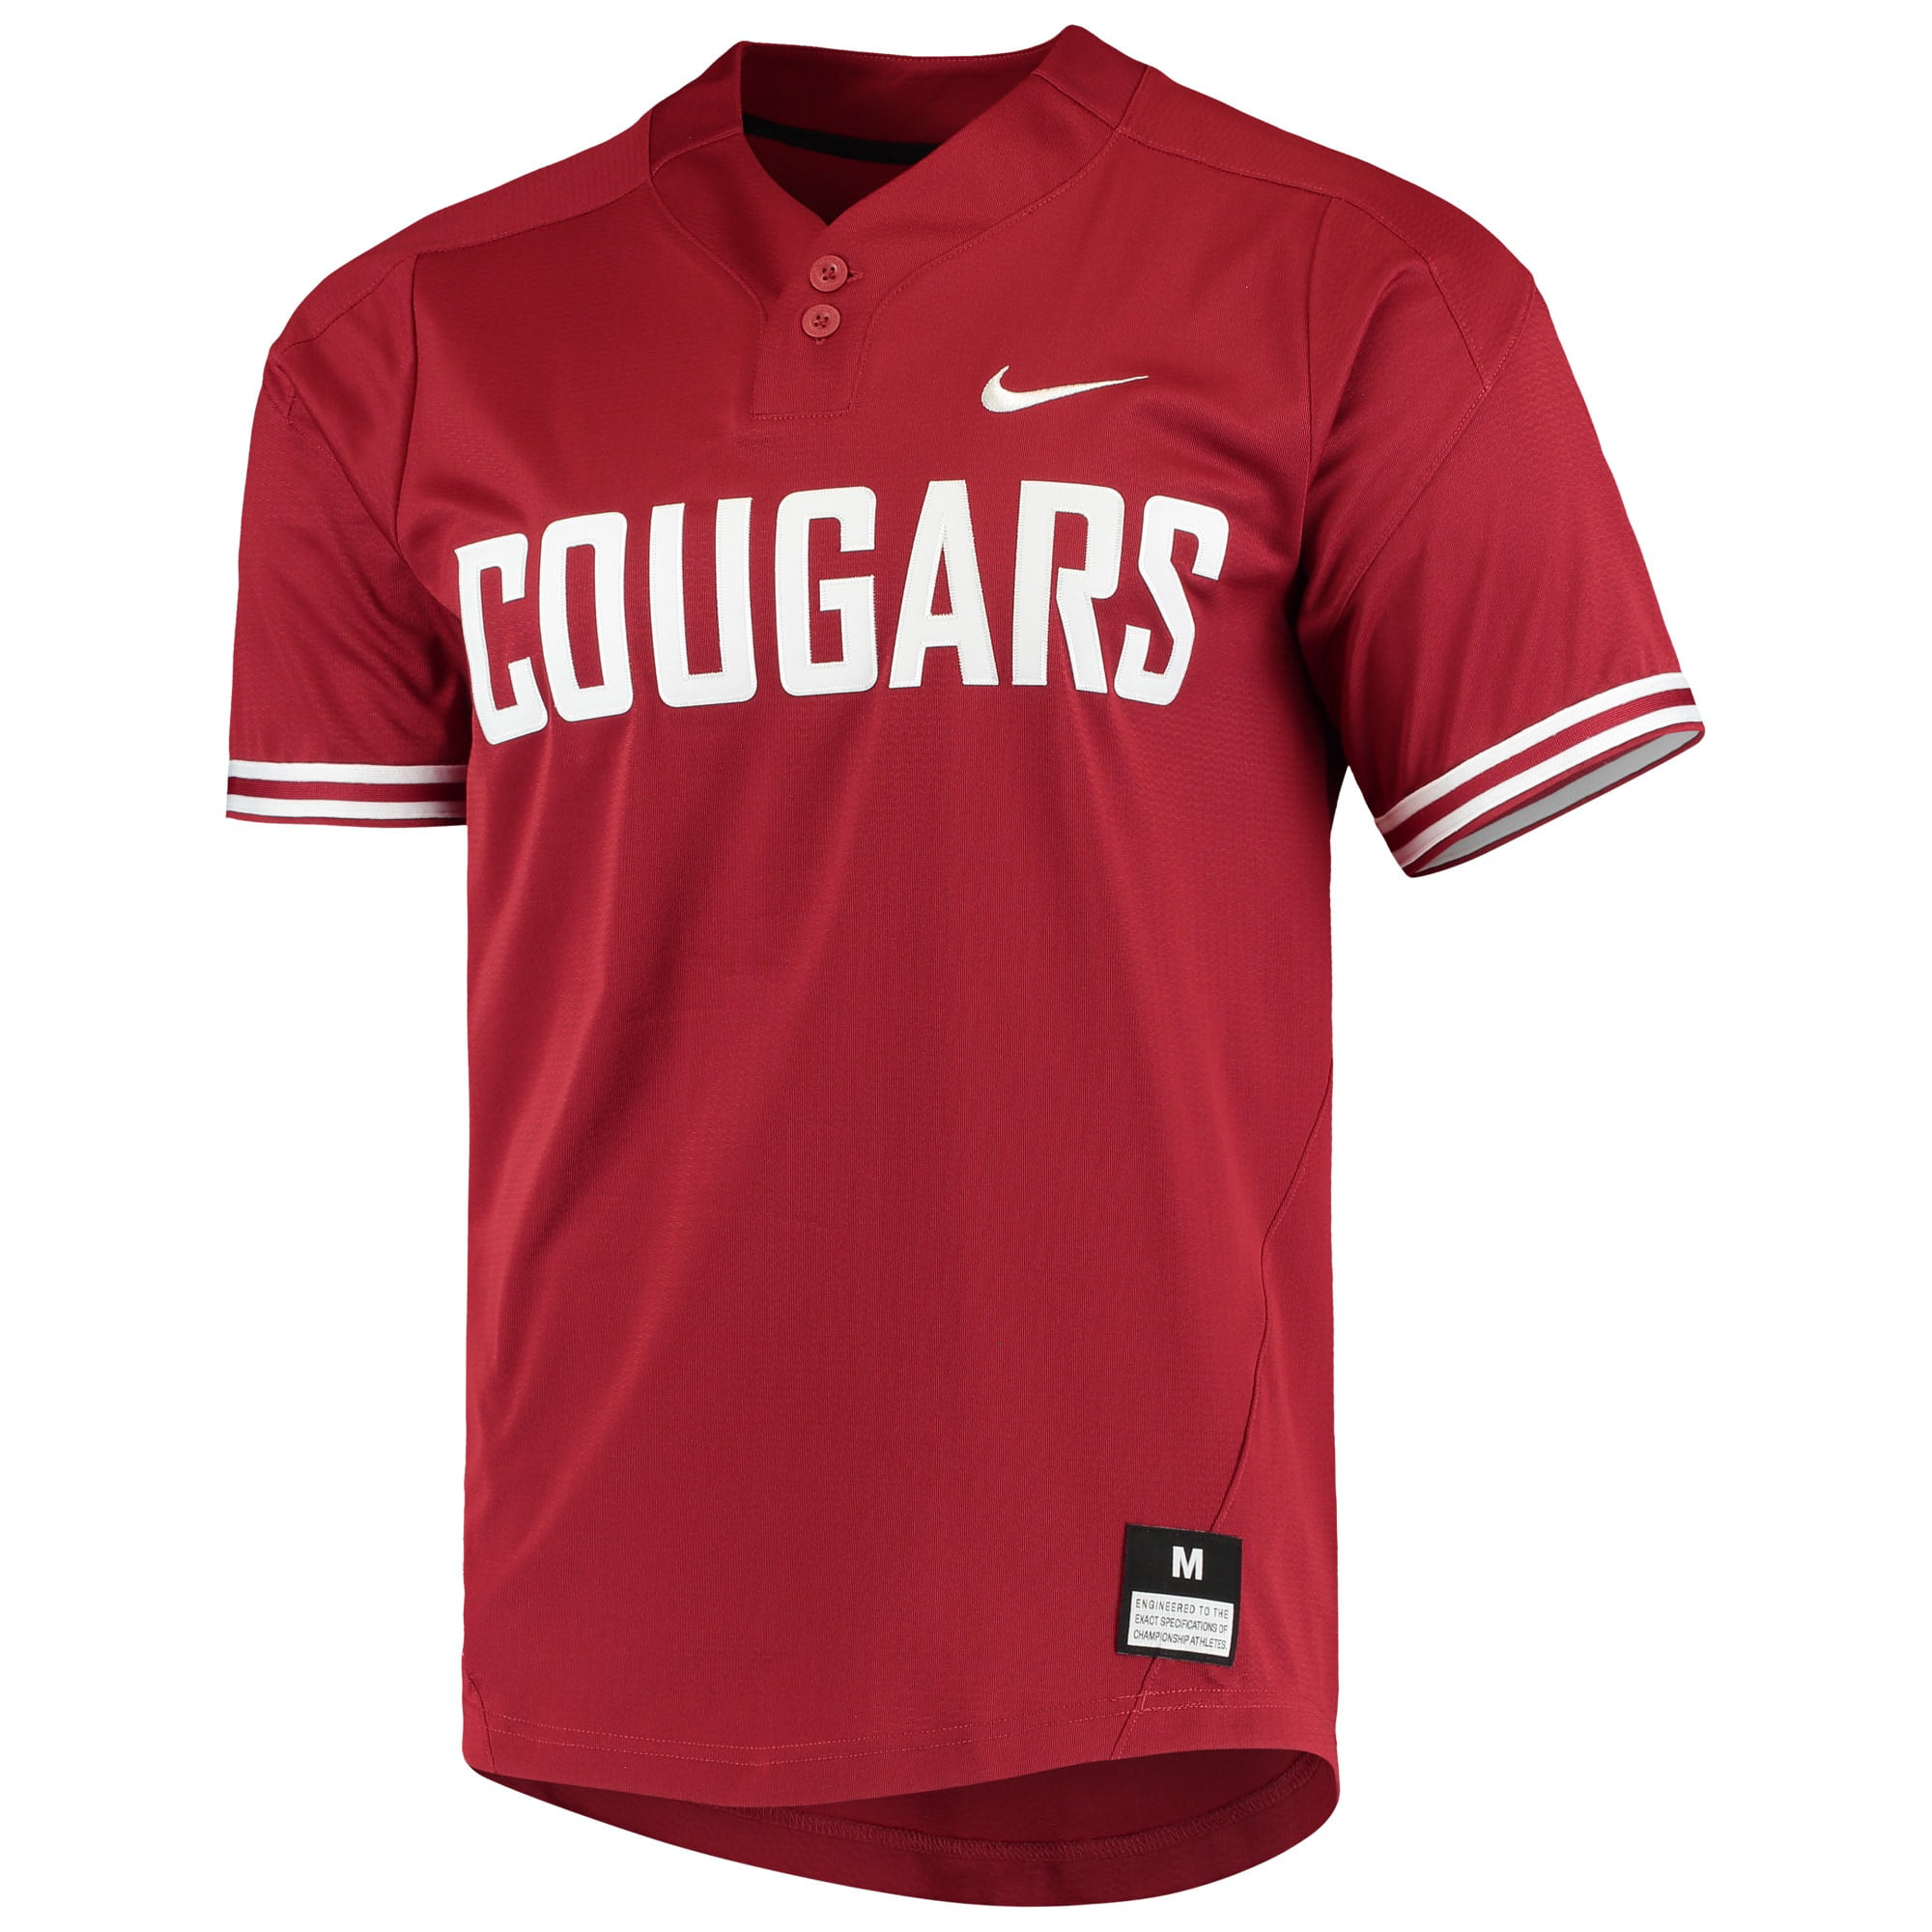 wsu cougars baseball jersey